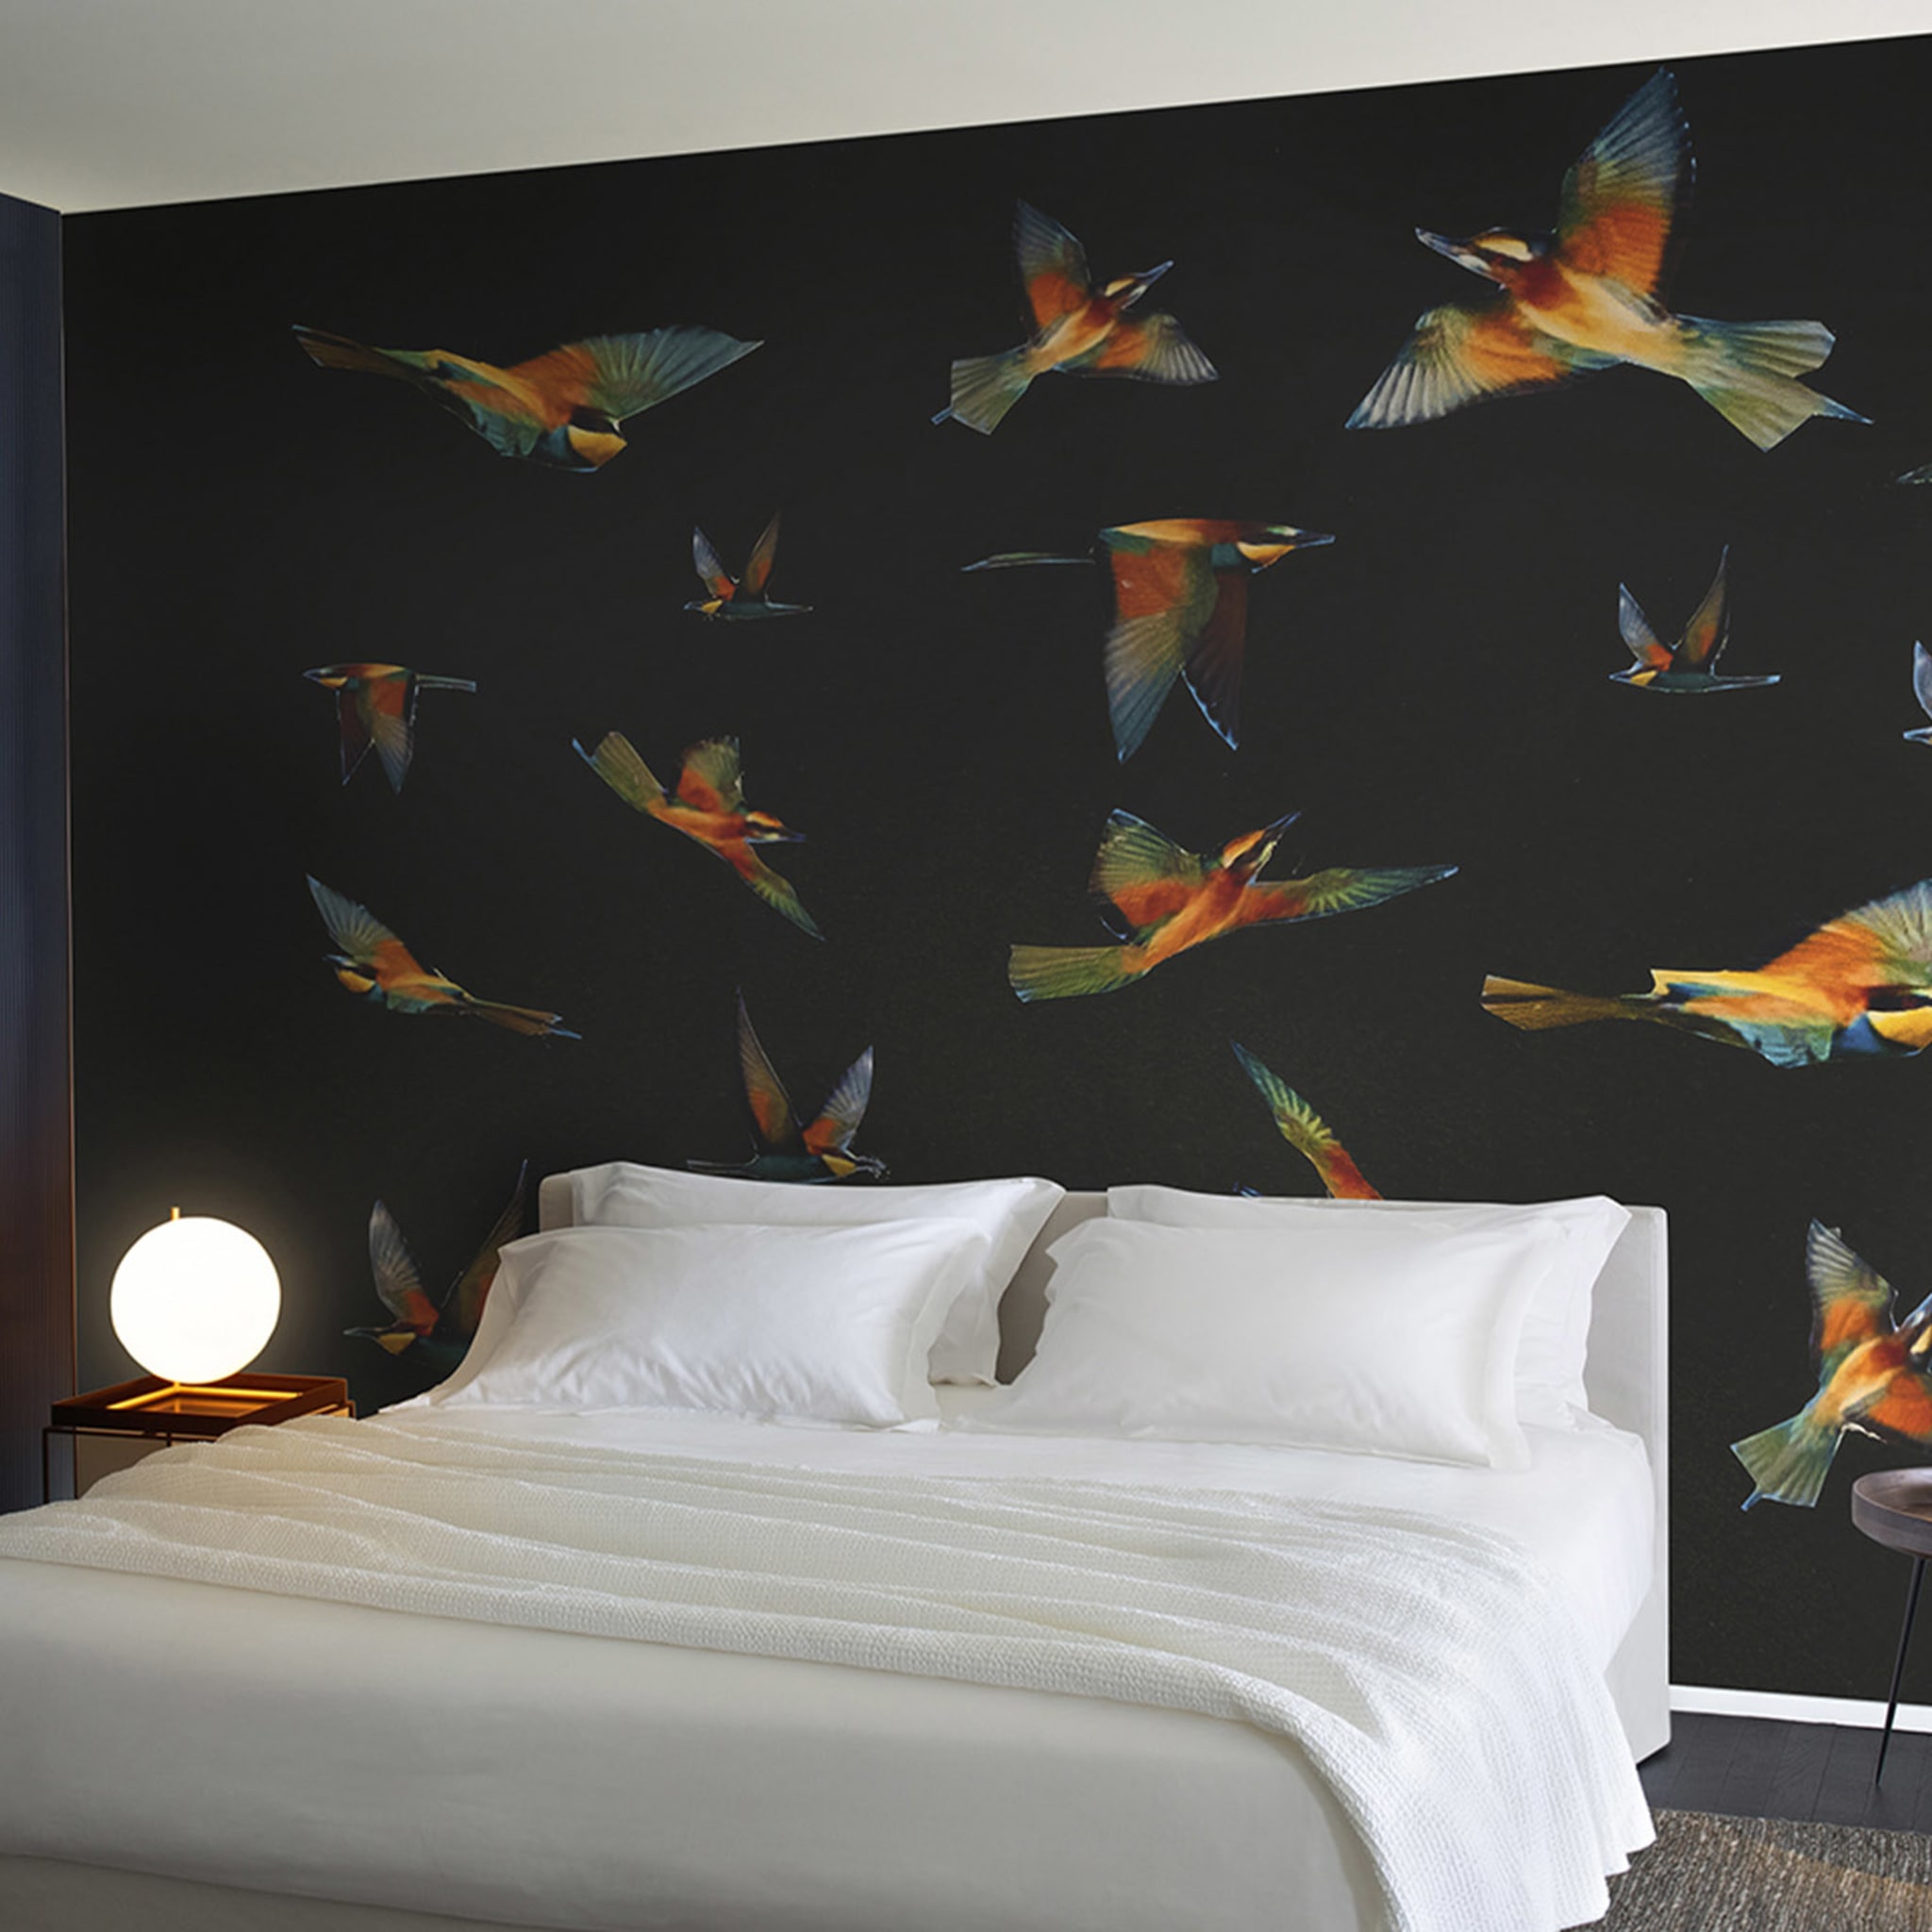 Black & Birds Polychrome Wallpaper by Liliana Moro - Alternative view 1